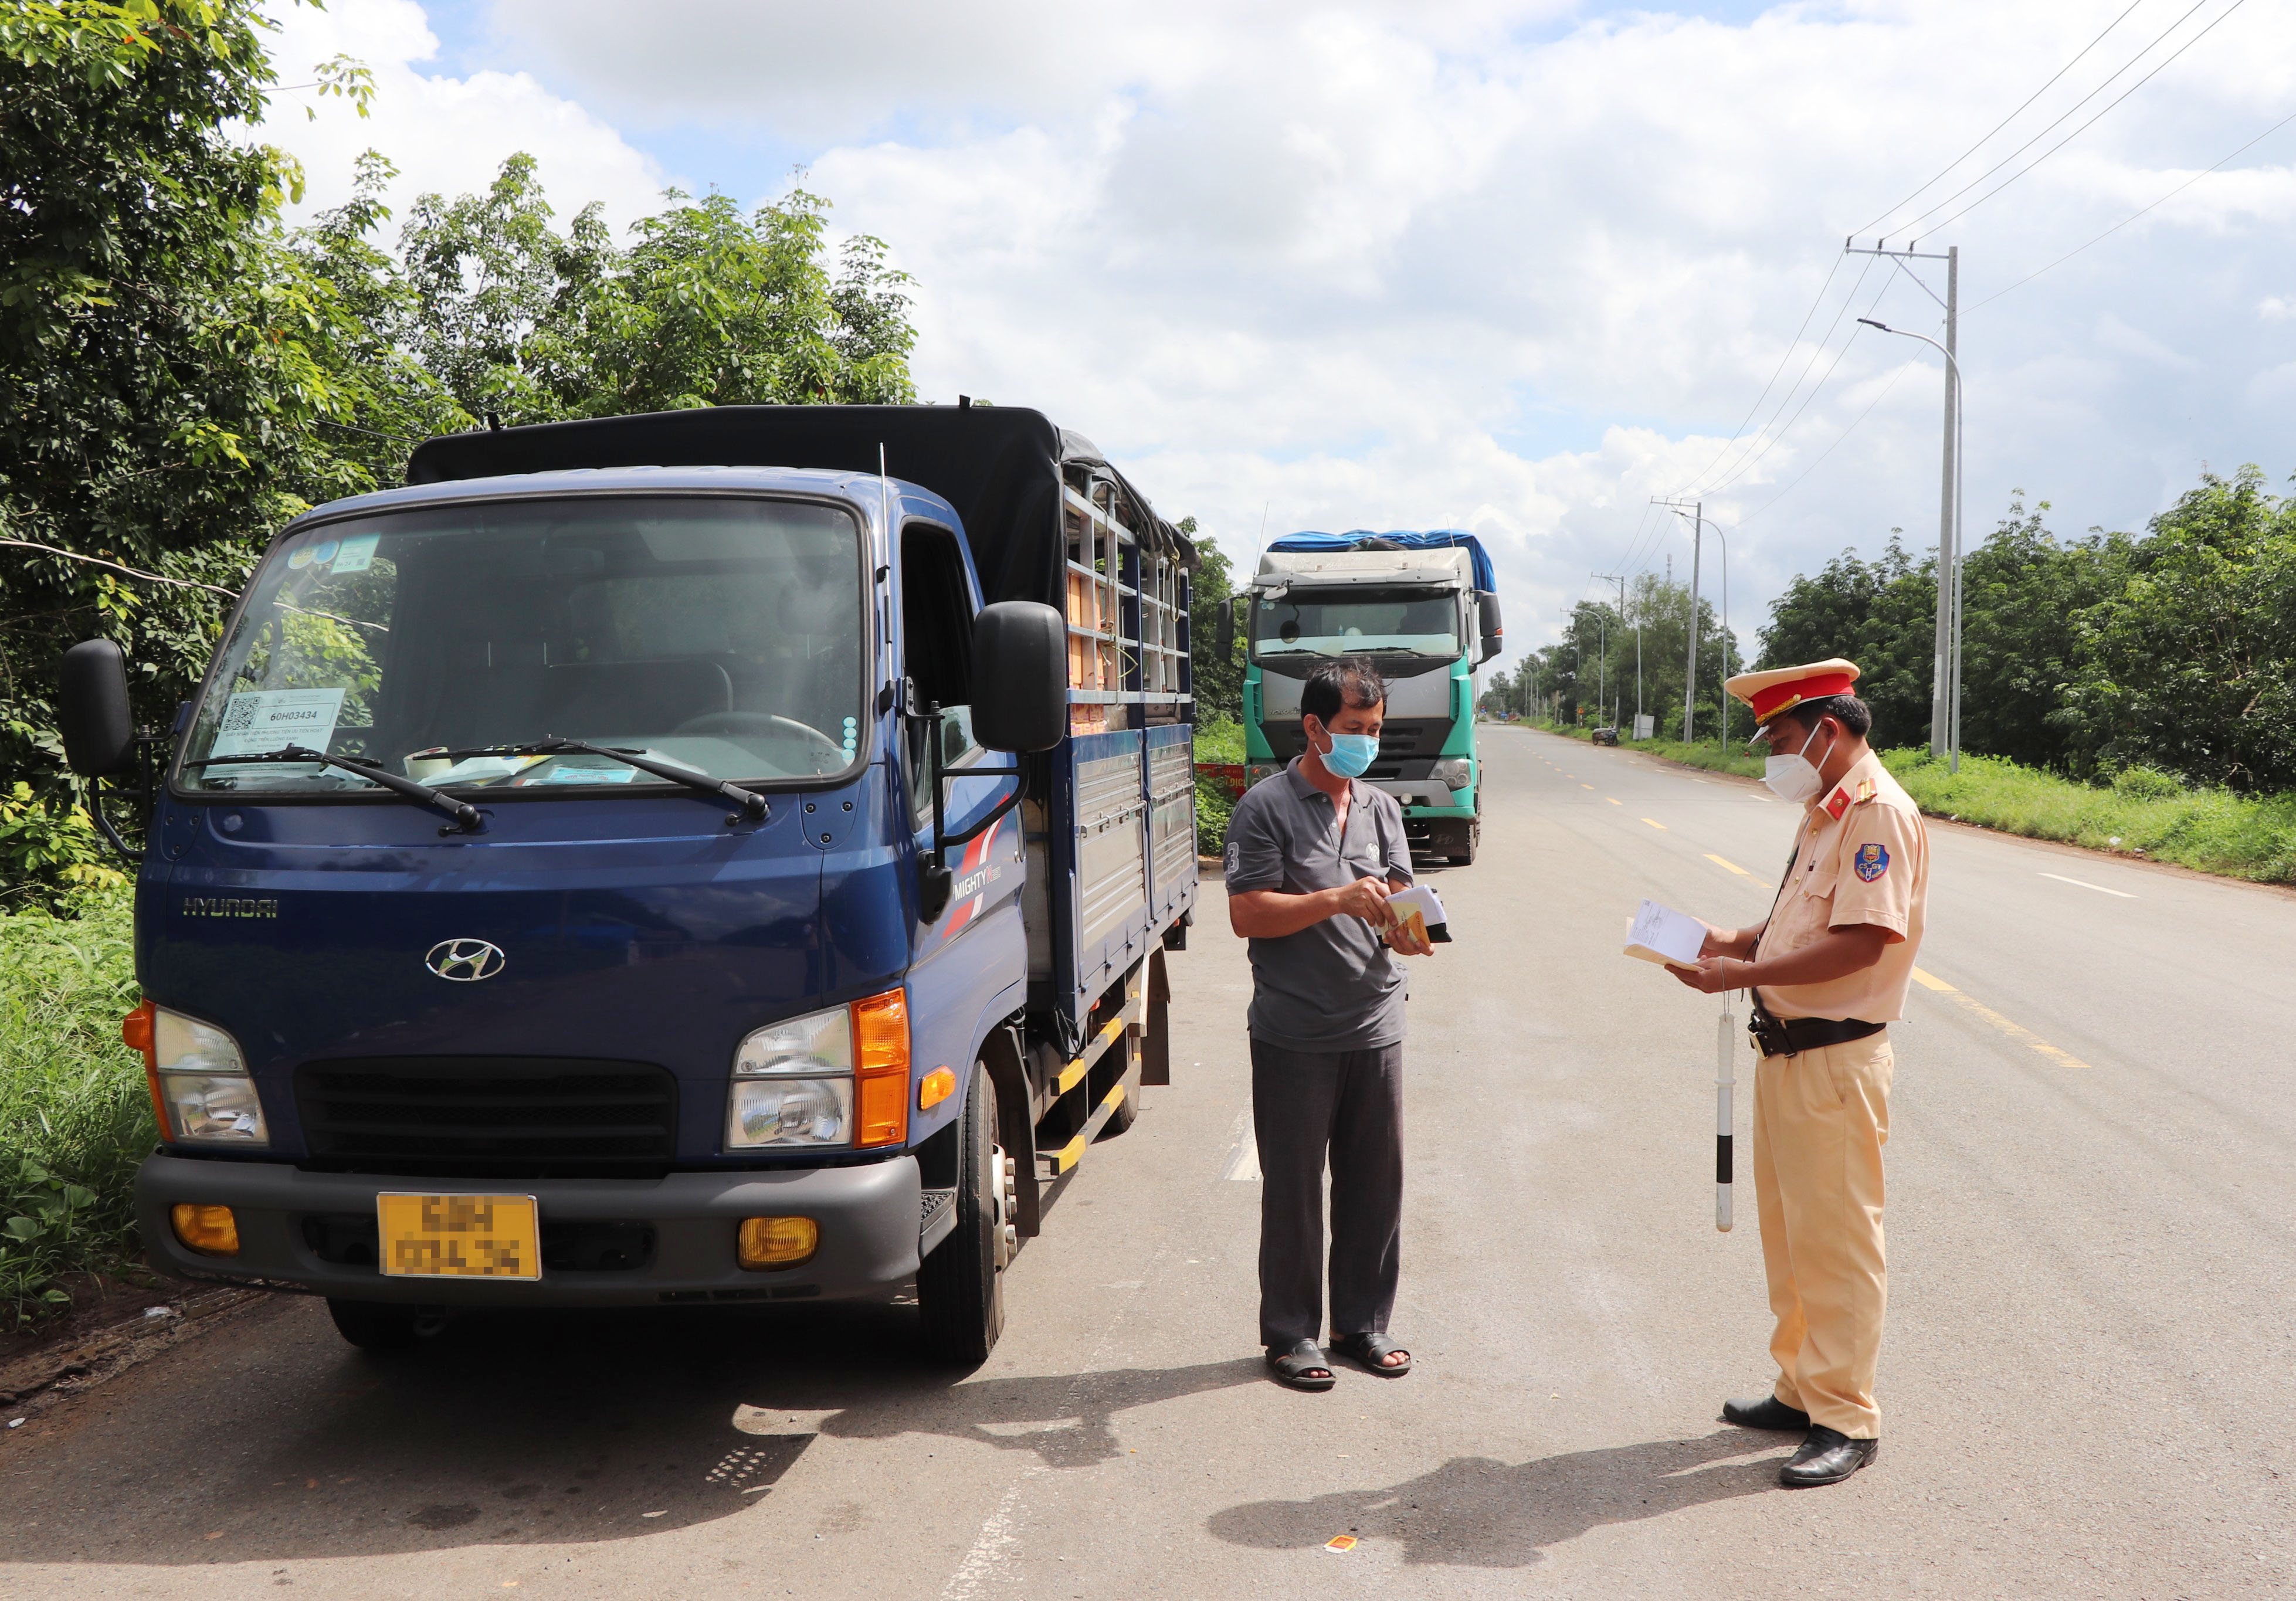 CSGT - Công an huyện Châu Đức kiểm tra giấy tờ đi đường của một tài xế xe tải lưu thông hướng Đồng Nai vào tỉnh Bà Rịa - Vũng Tàu trên đường 765. Ảnh: ĐINH HÙNG